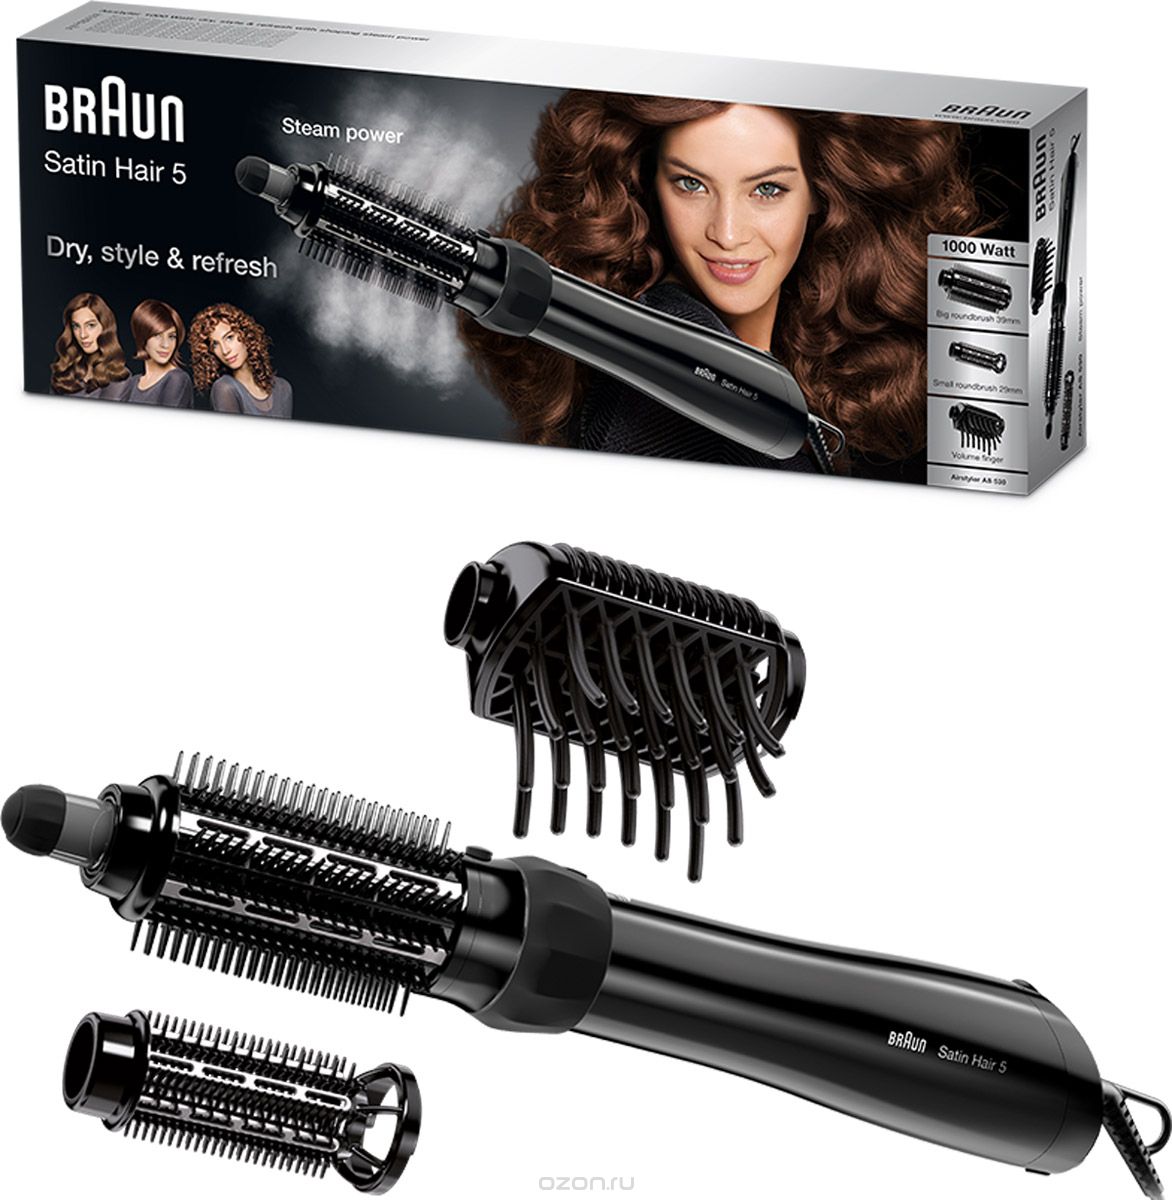 - Braun Satin Hair 5 AS 530 MN, Black